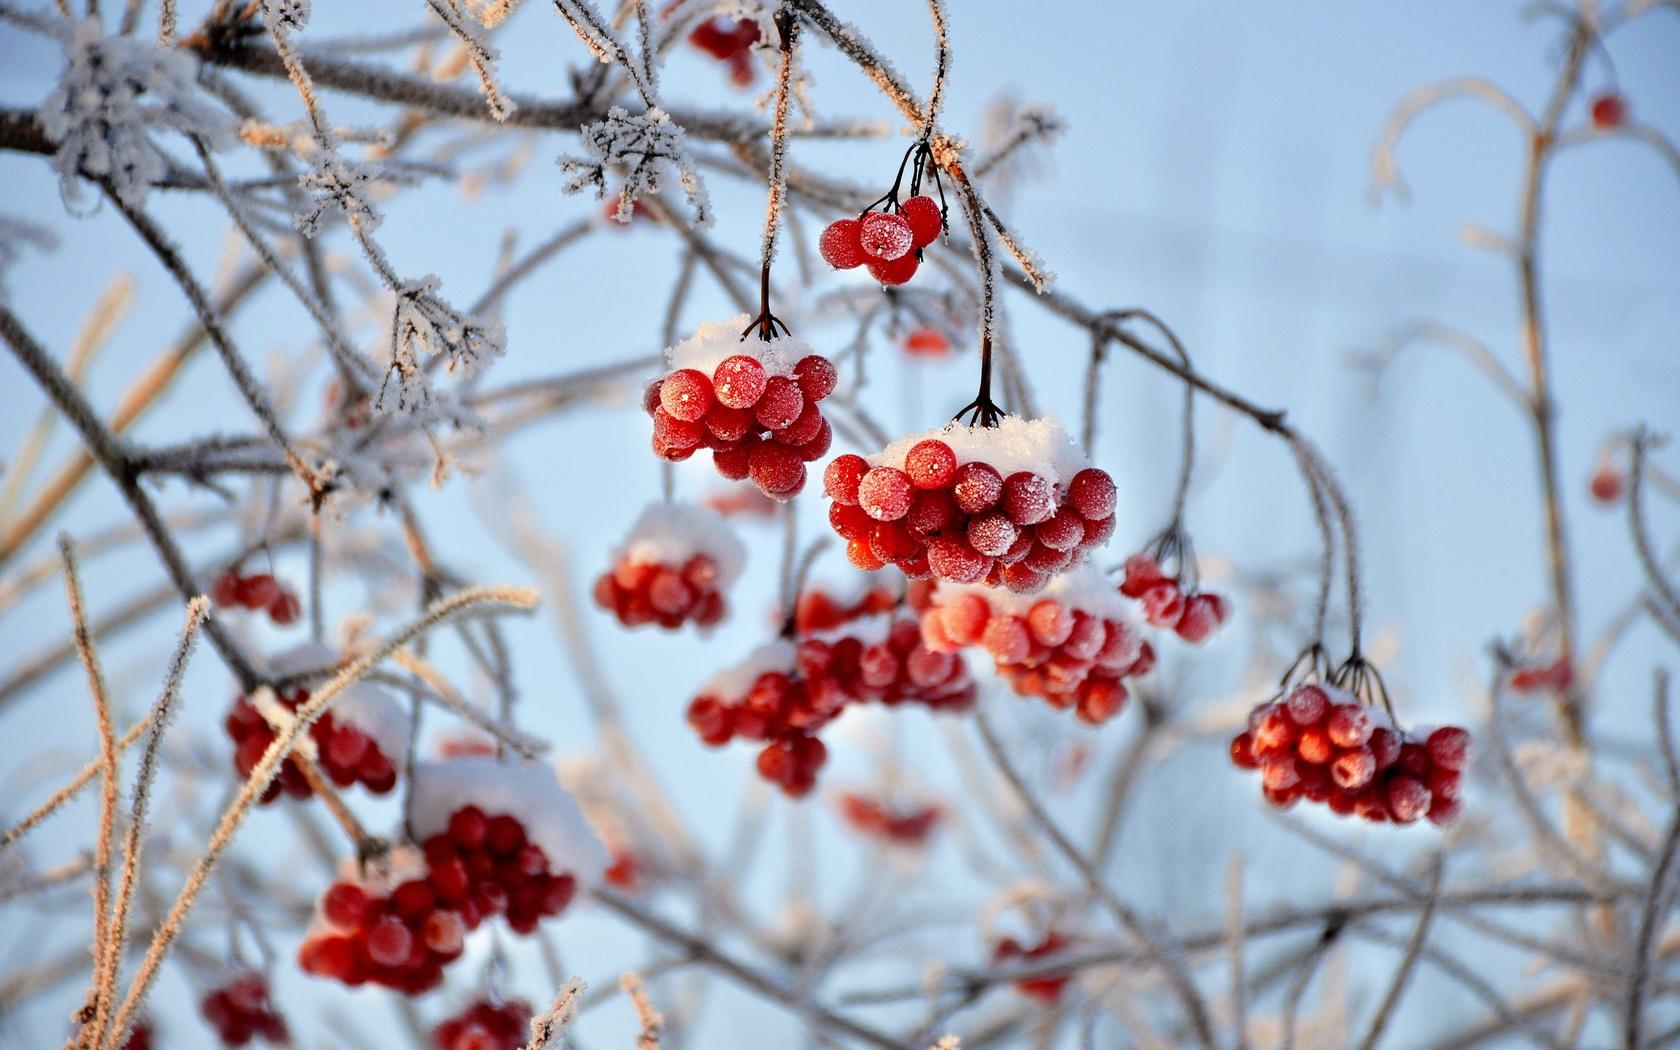 Зимний флористический шедевр: Калина во льдах | Калина в снегу Фото  №1371483 скачать